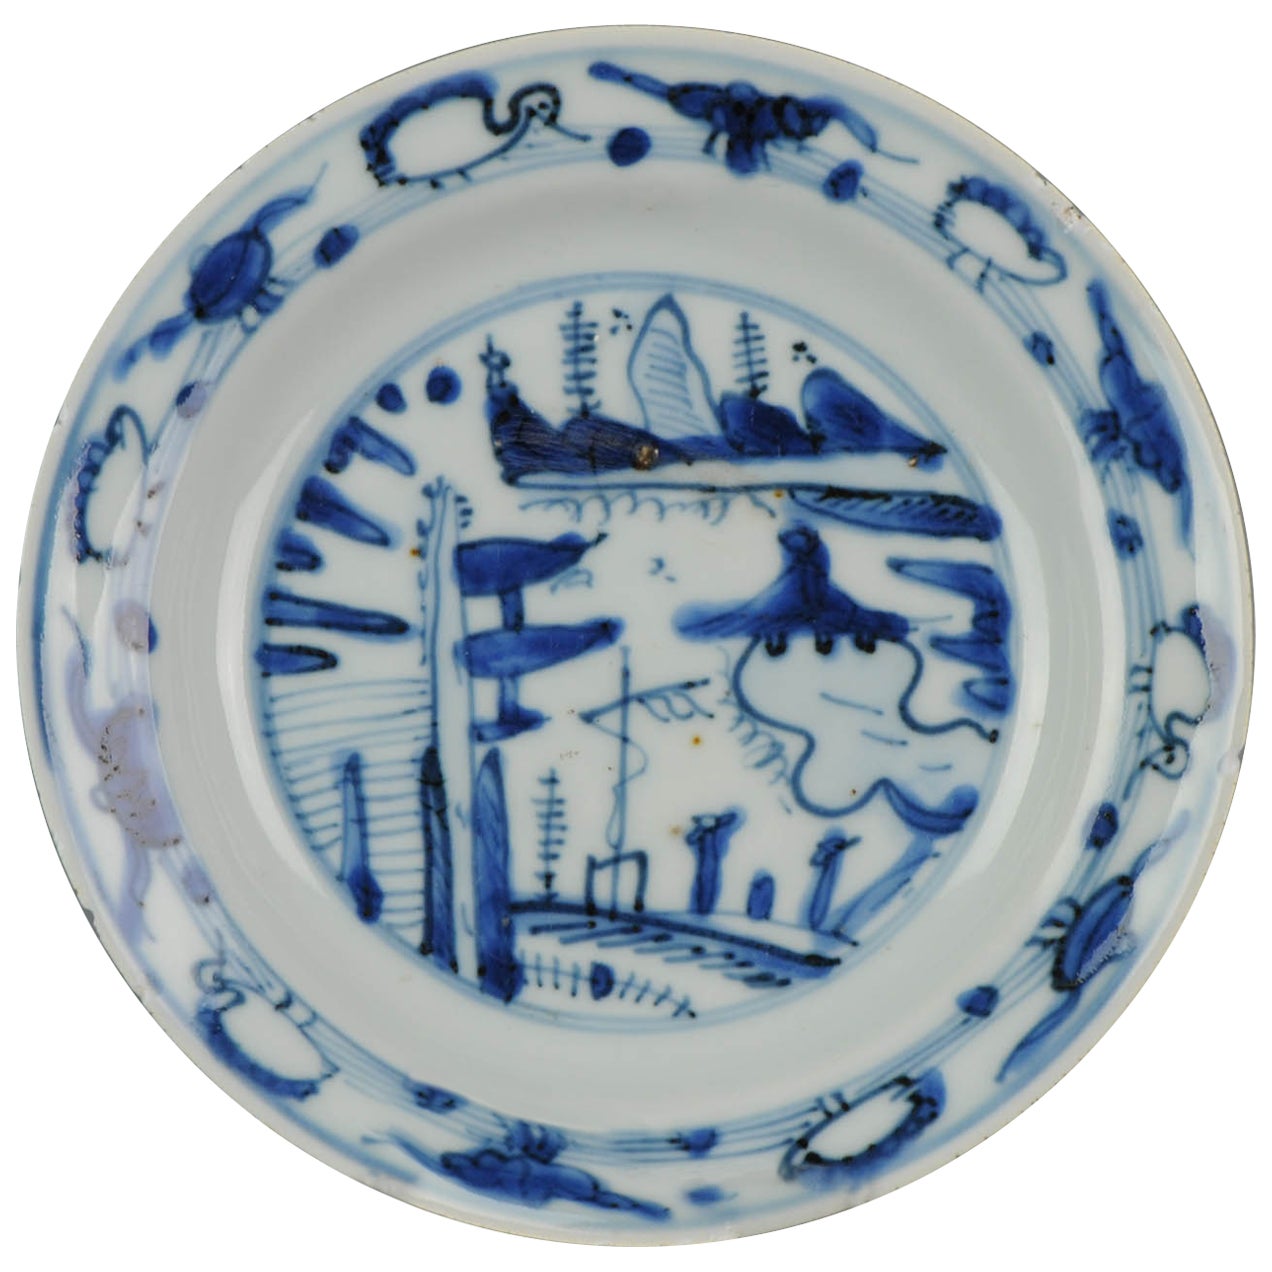 Antique Chinese Porcelain Jiajing/Longqing China Literati Plate, ca 1550-1580